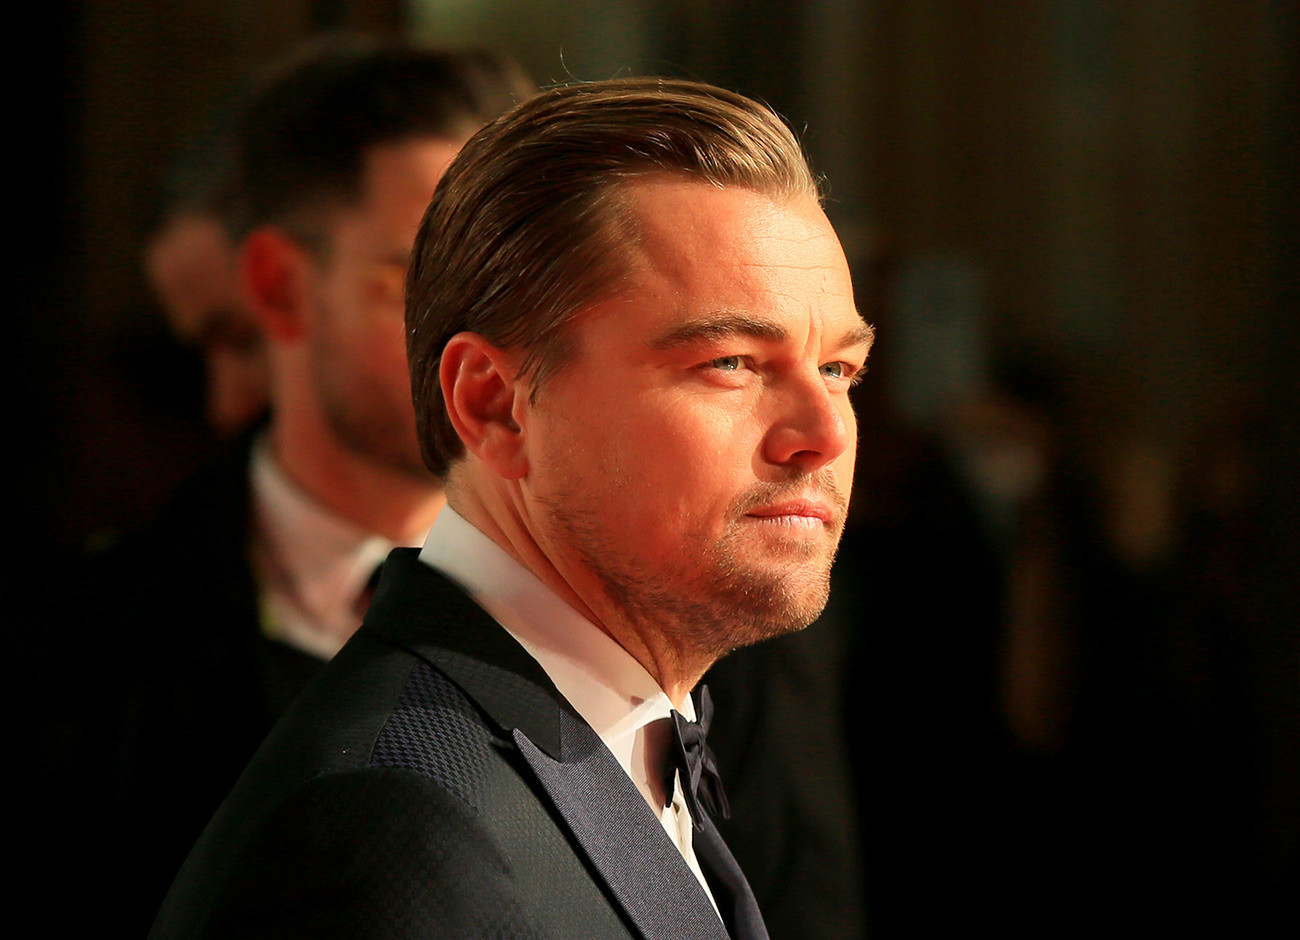 Glumac Leonardo Di Caprio stiže na dodjelu nagrada Britanske akademije filmske i televizijske umjetnosti (BAFTA) u londonskoj Kraljevskoj operi.